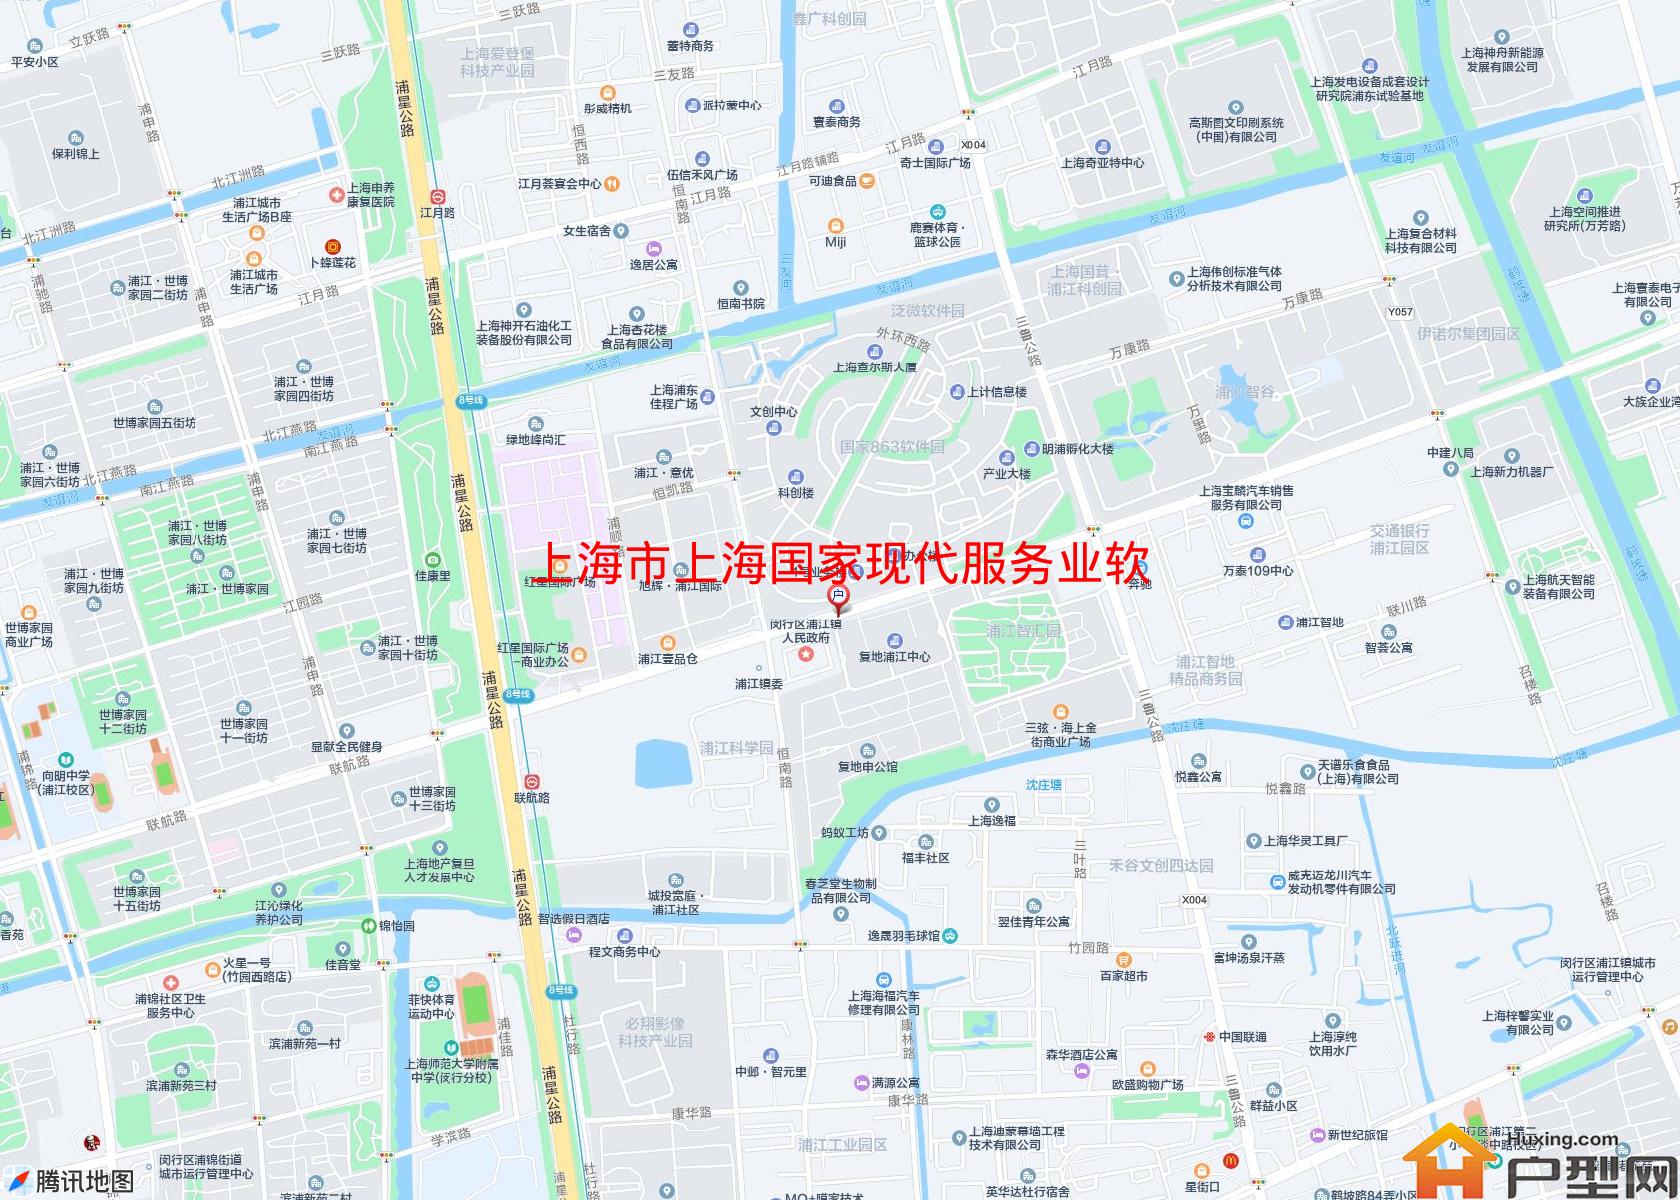 上海国家现代服务业软件产业化基地小区 - 户型网